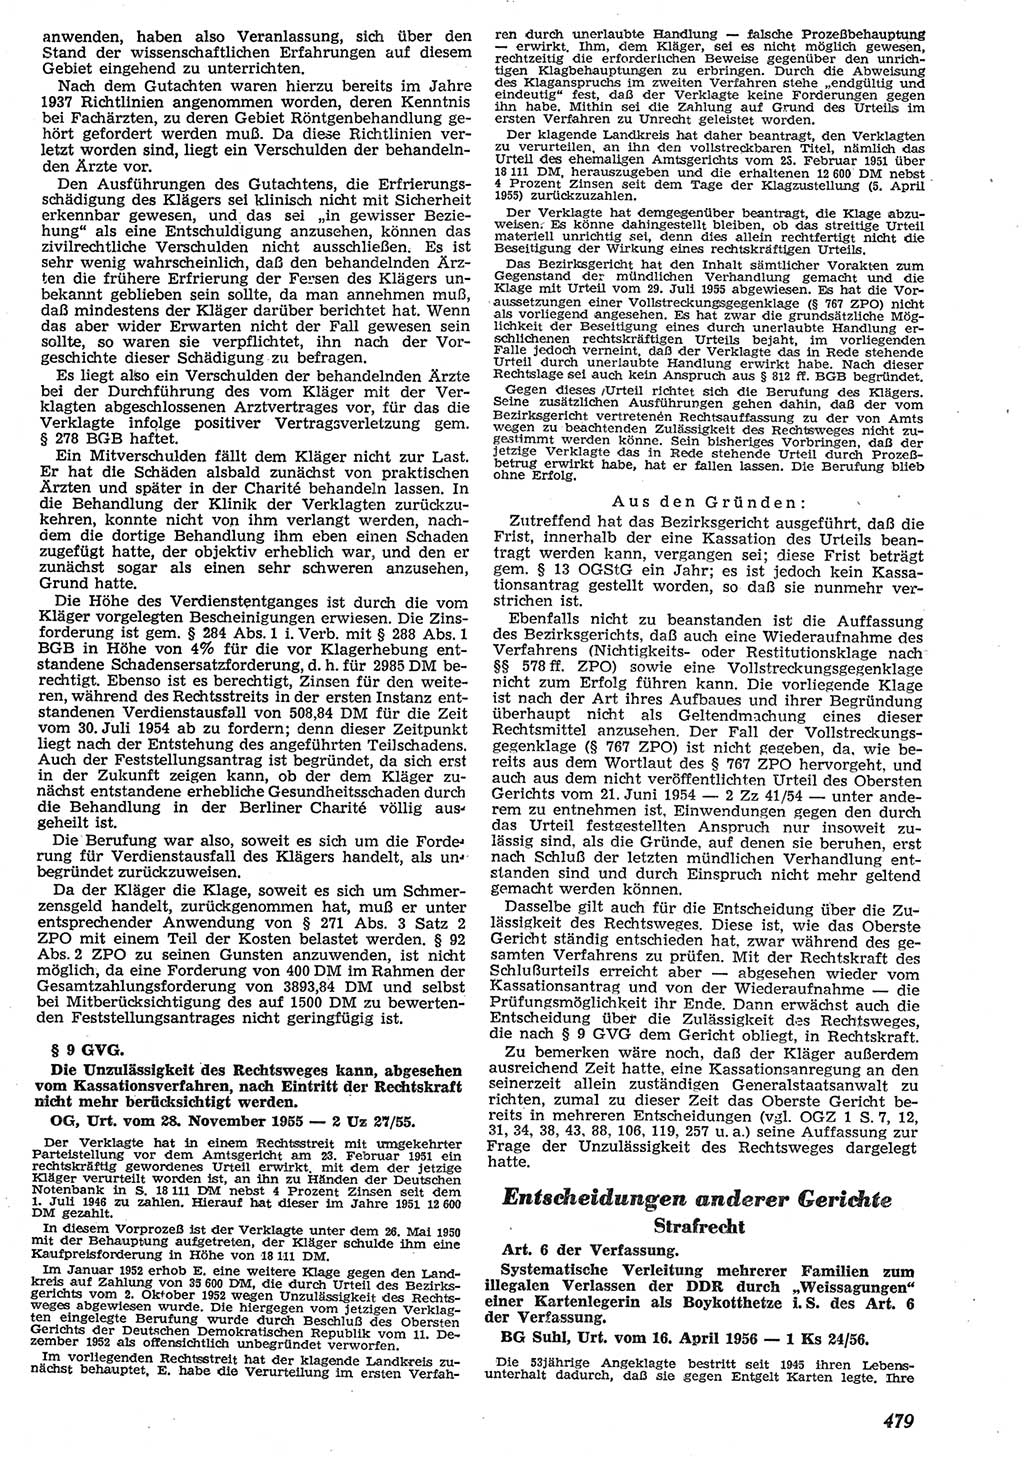 Neue Justiz (NJ), Zeitschrift für Recht und Rechtswissenschaft [Deutsche Demokratische Republik (DDR)], 10. Jahrgang 1956, Seite 479 (NJ DDR 1956, S. 479)